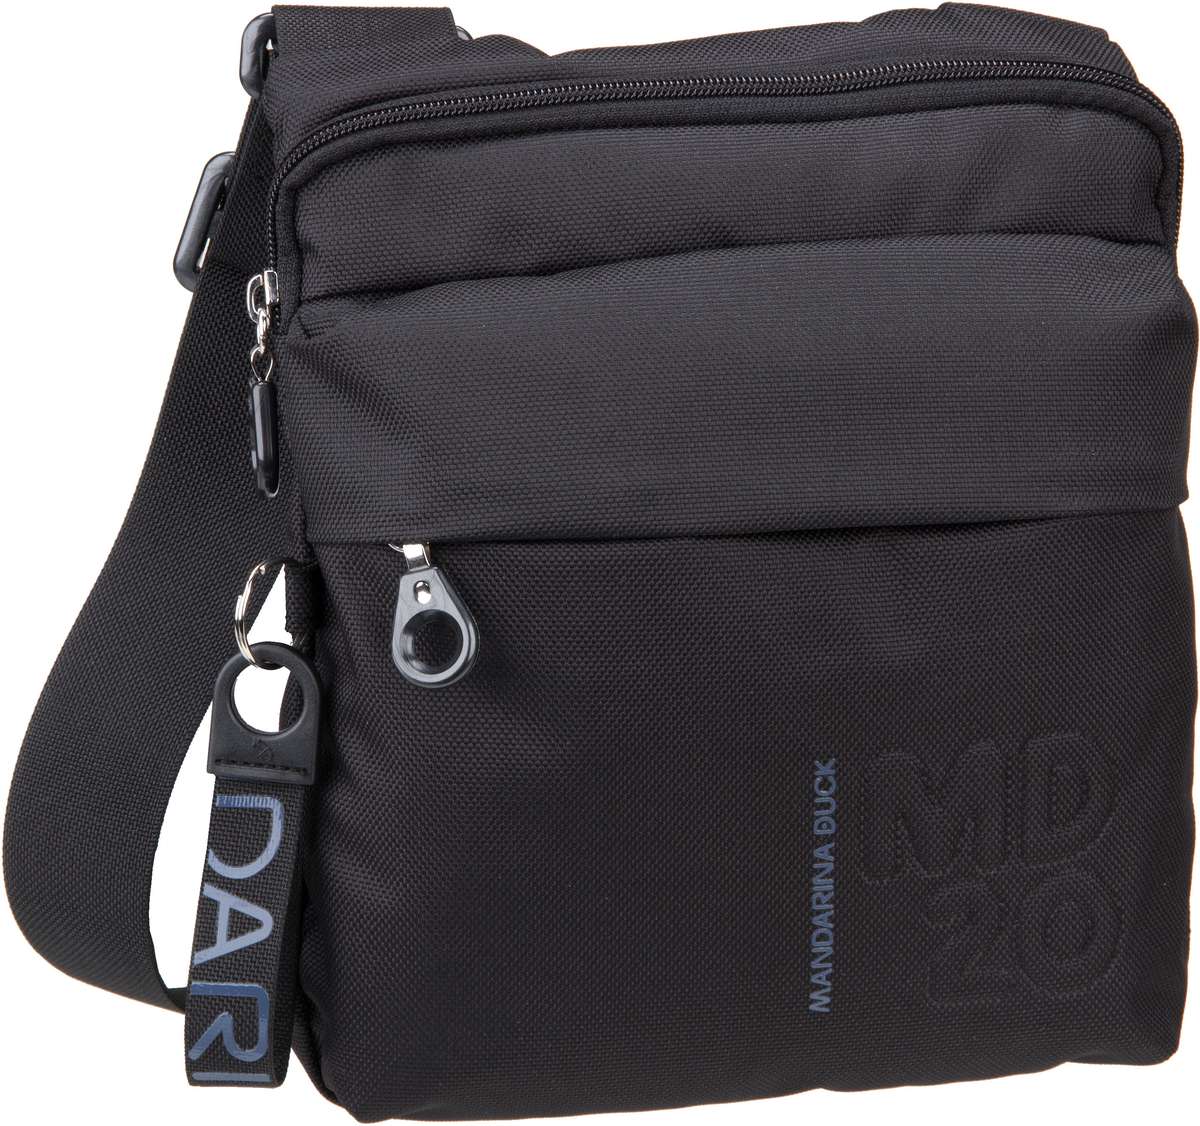 Mandarina Duck MD20 Small Crossover Bag QMT04 - Black